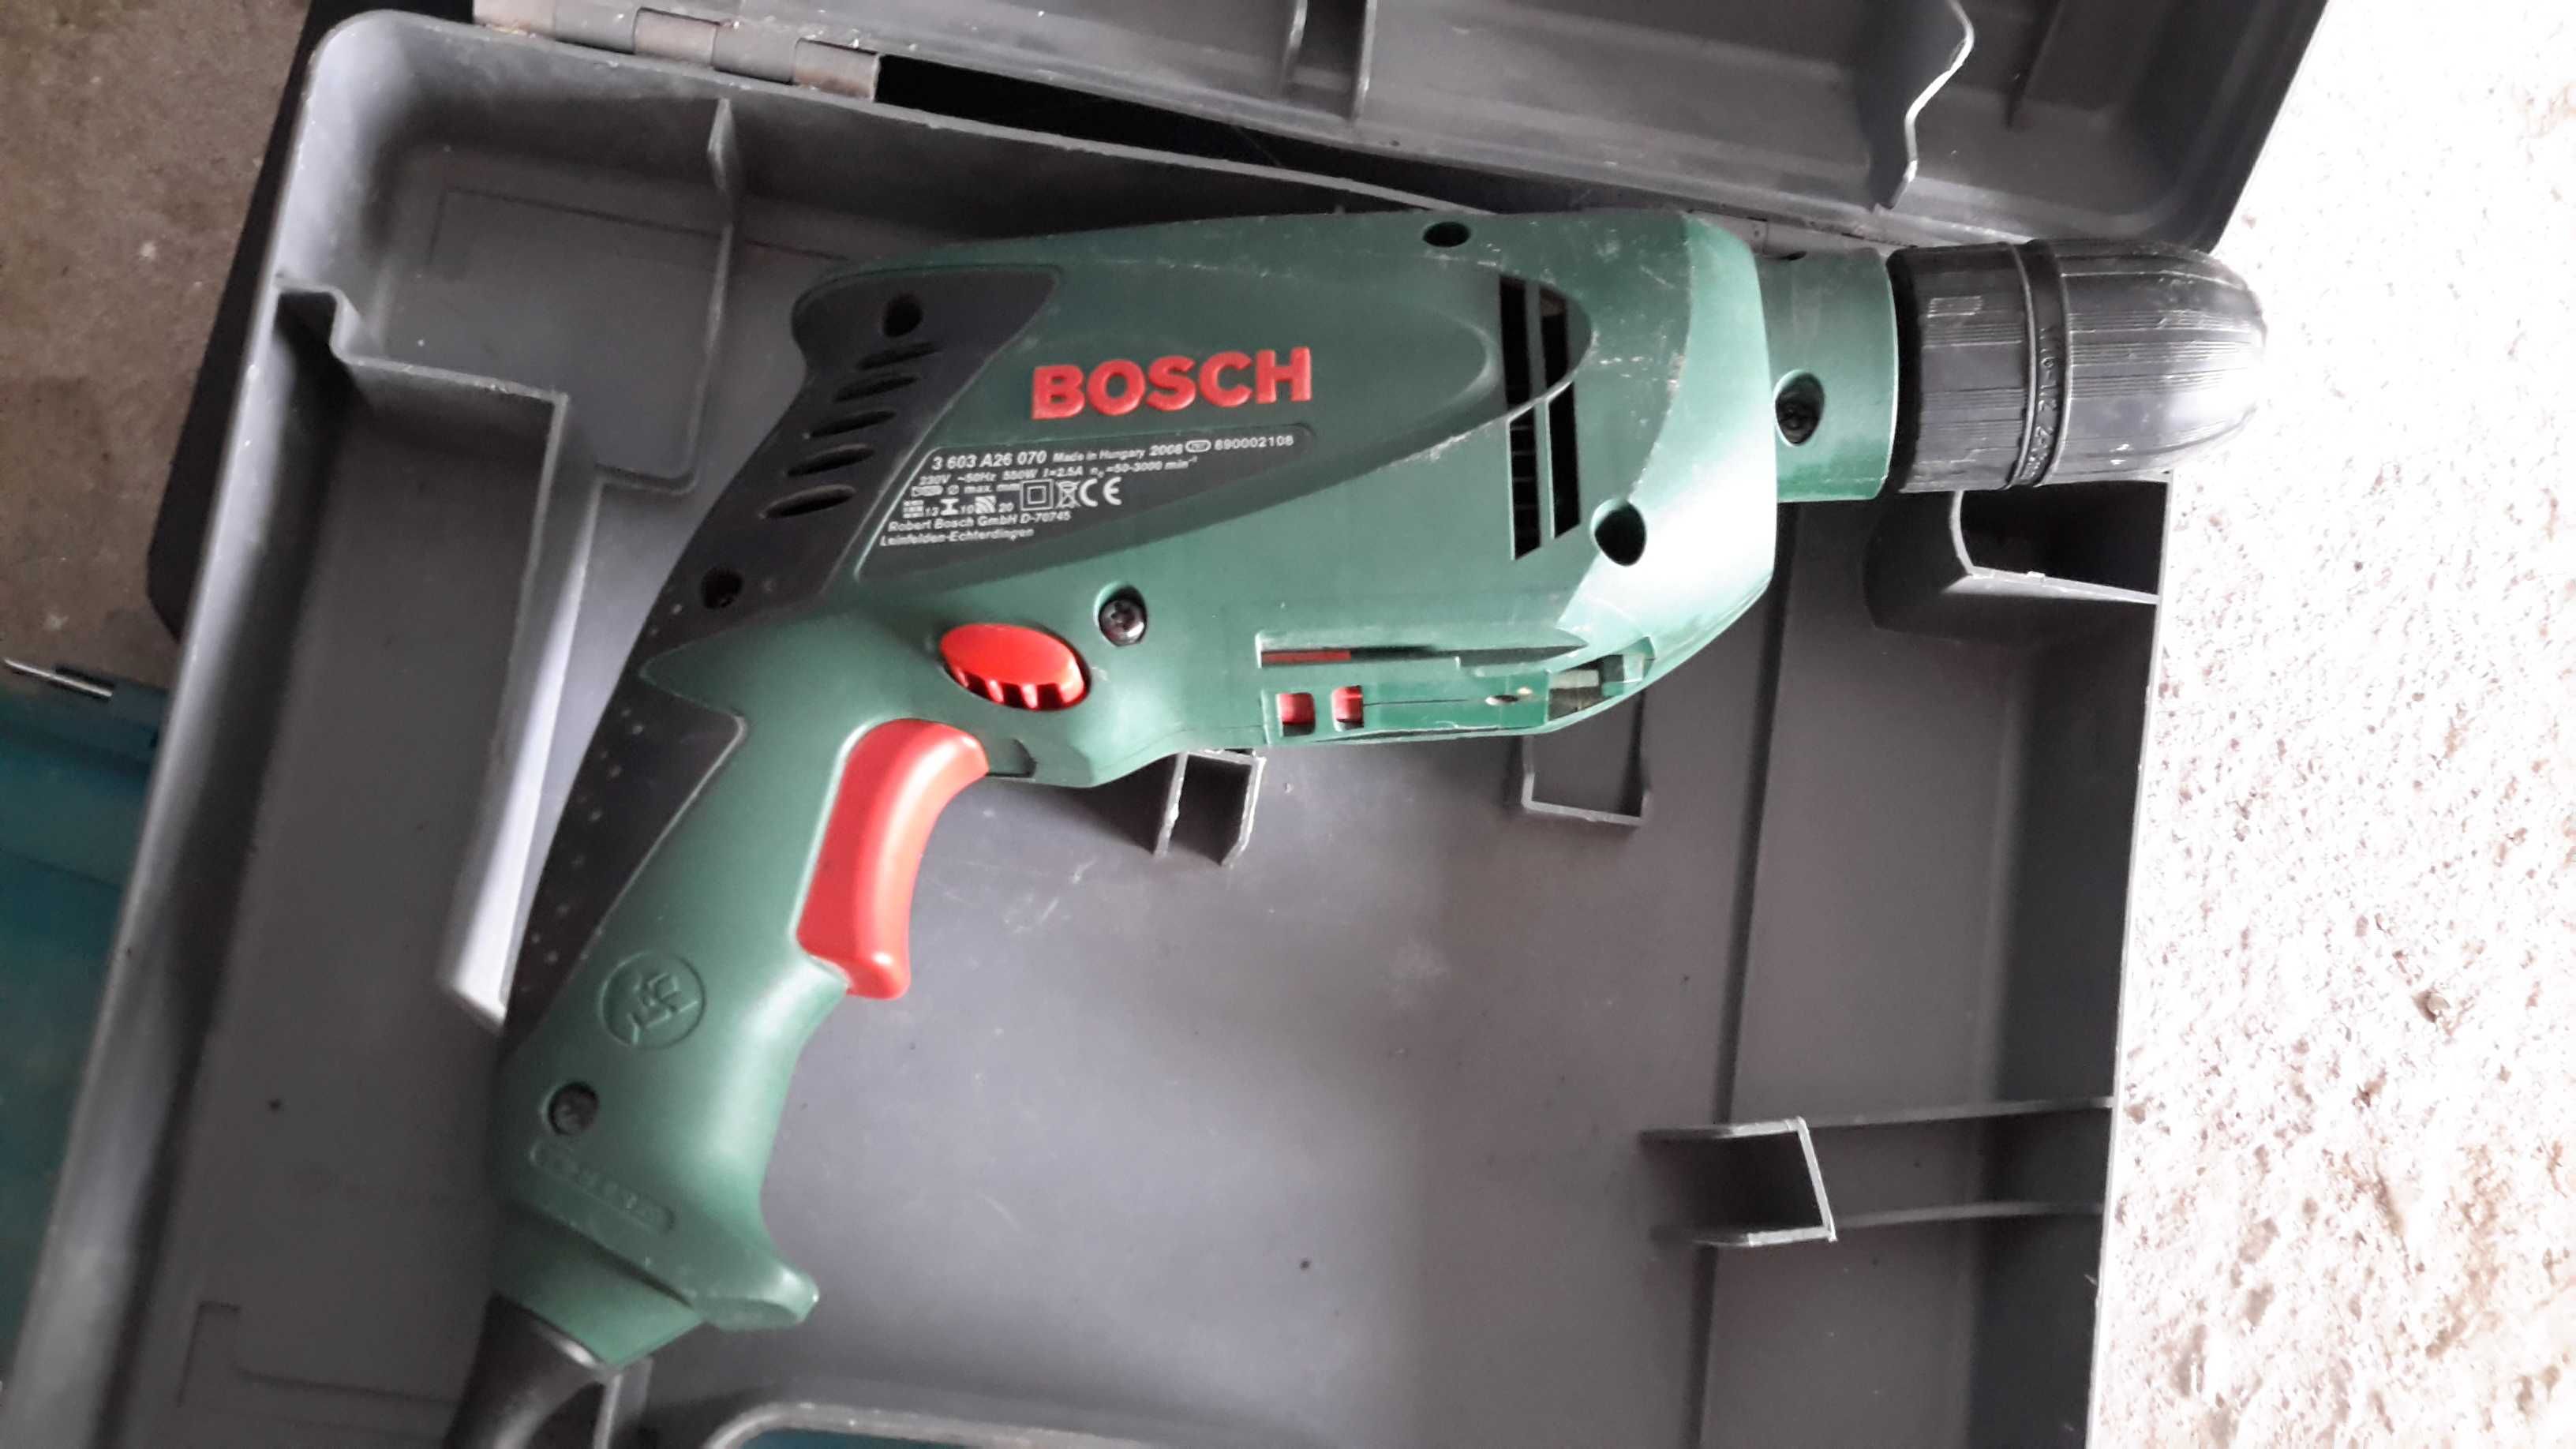 Бормашина - Bosch 550 W